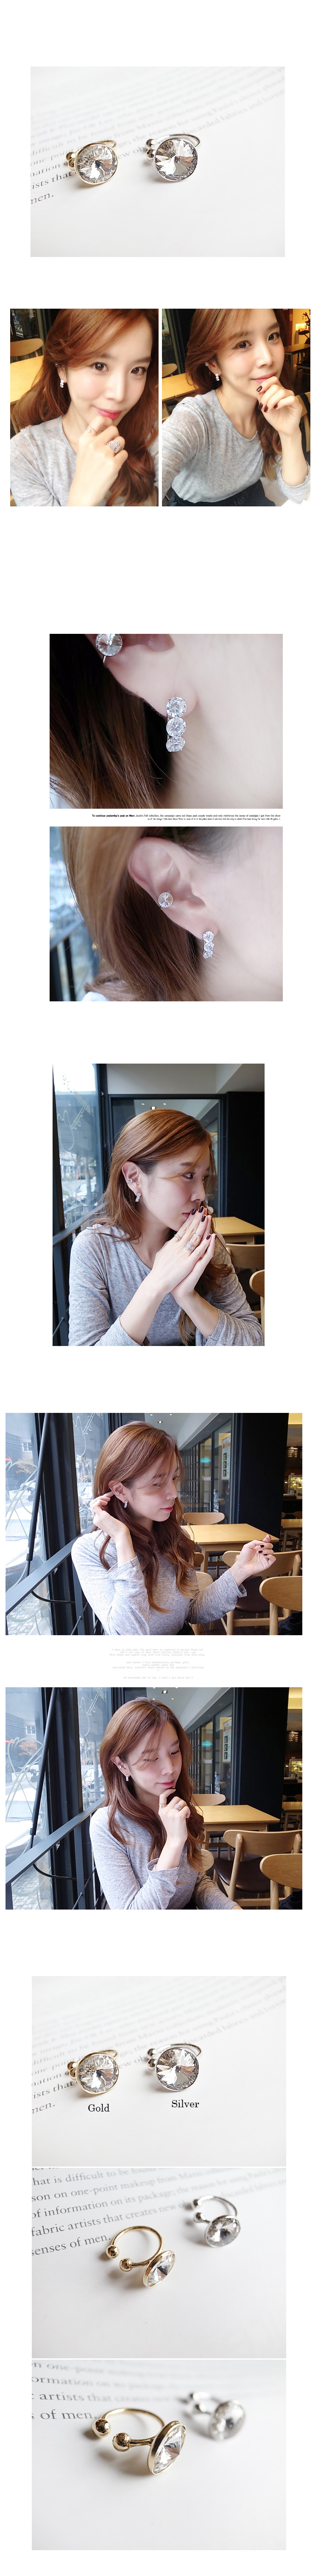 韓國 NaniWorld 閃亮風仿鑽耳骨夾 #2599 銀色